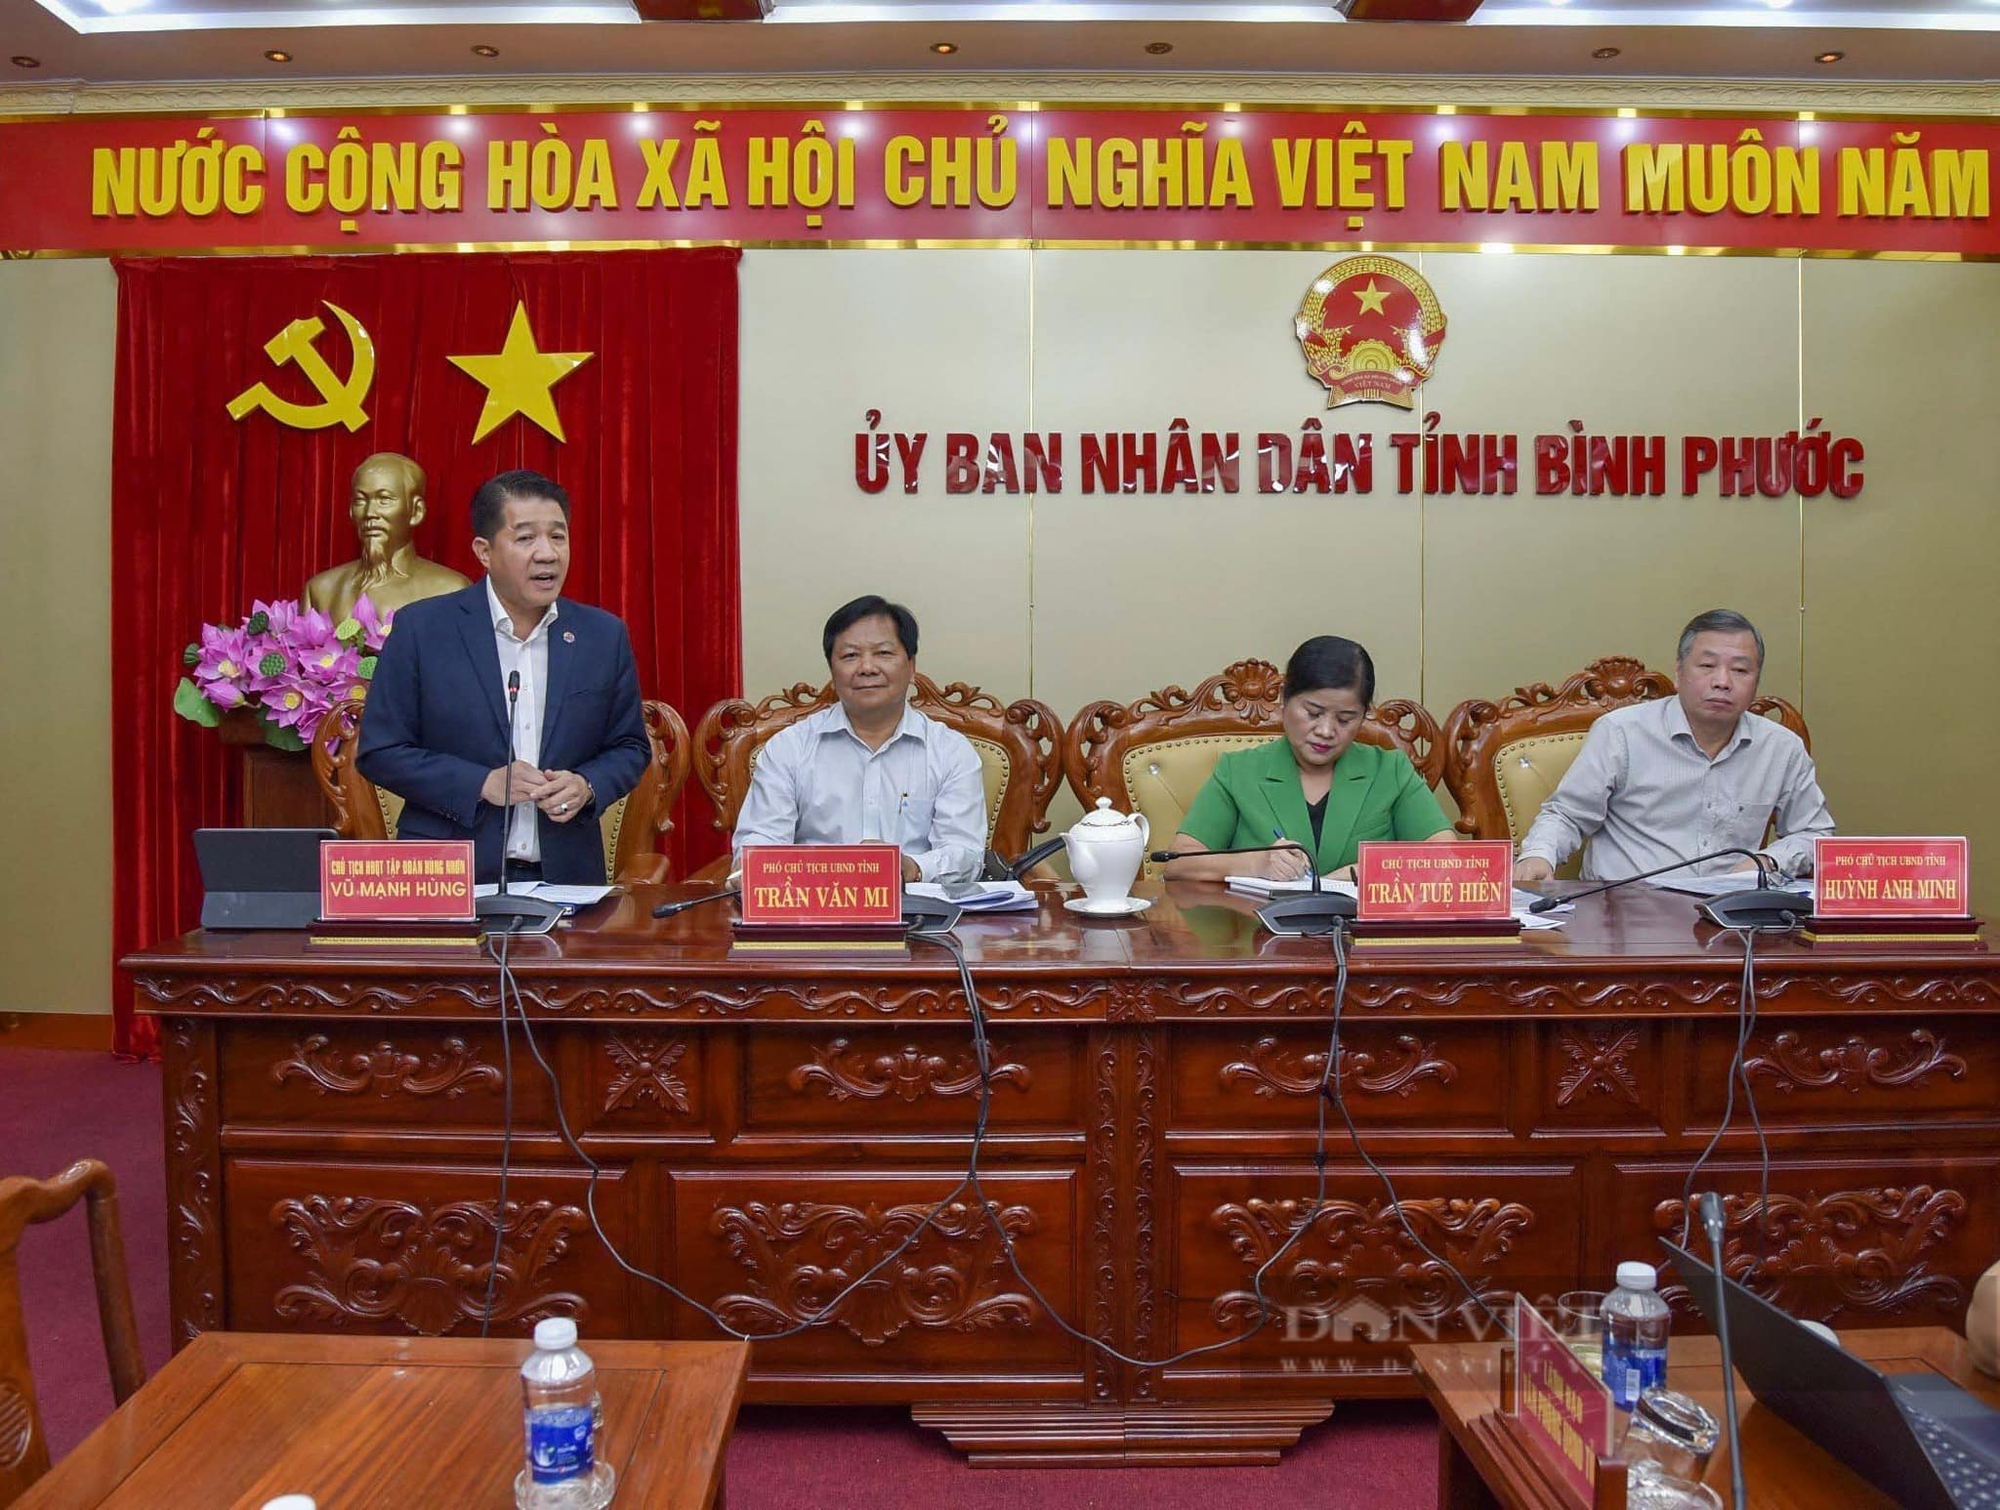 Hơn 360 doanh nghiệp sẽ tham dự “Diễn đàn kết nối doanh nghiệp” ở tỉnh Bình Phước- Ảnh 2.